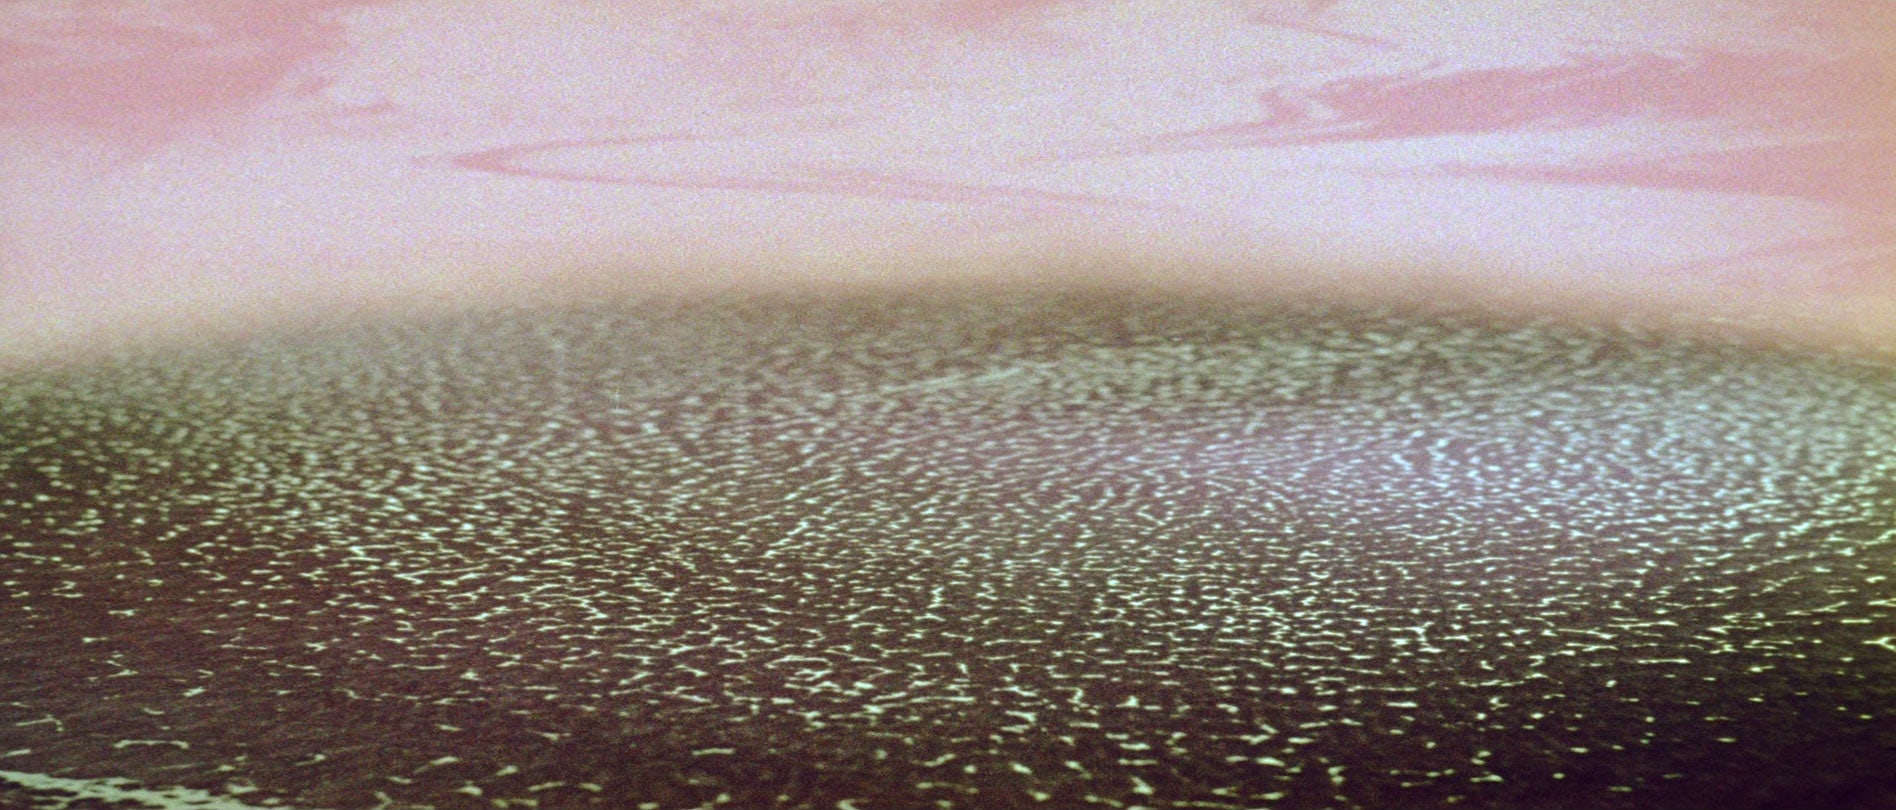 Waves of “Solaris” by Andrei Tarkovsky, 1972